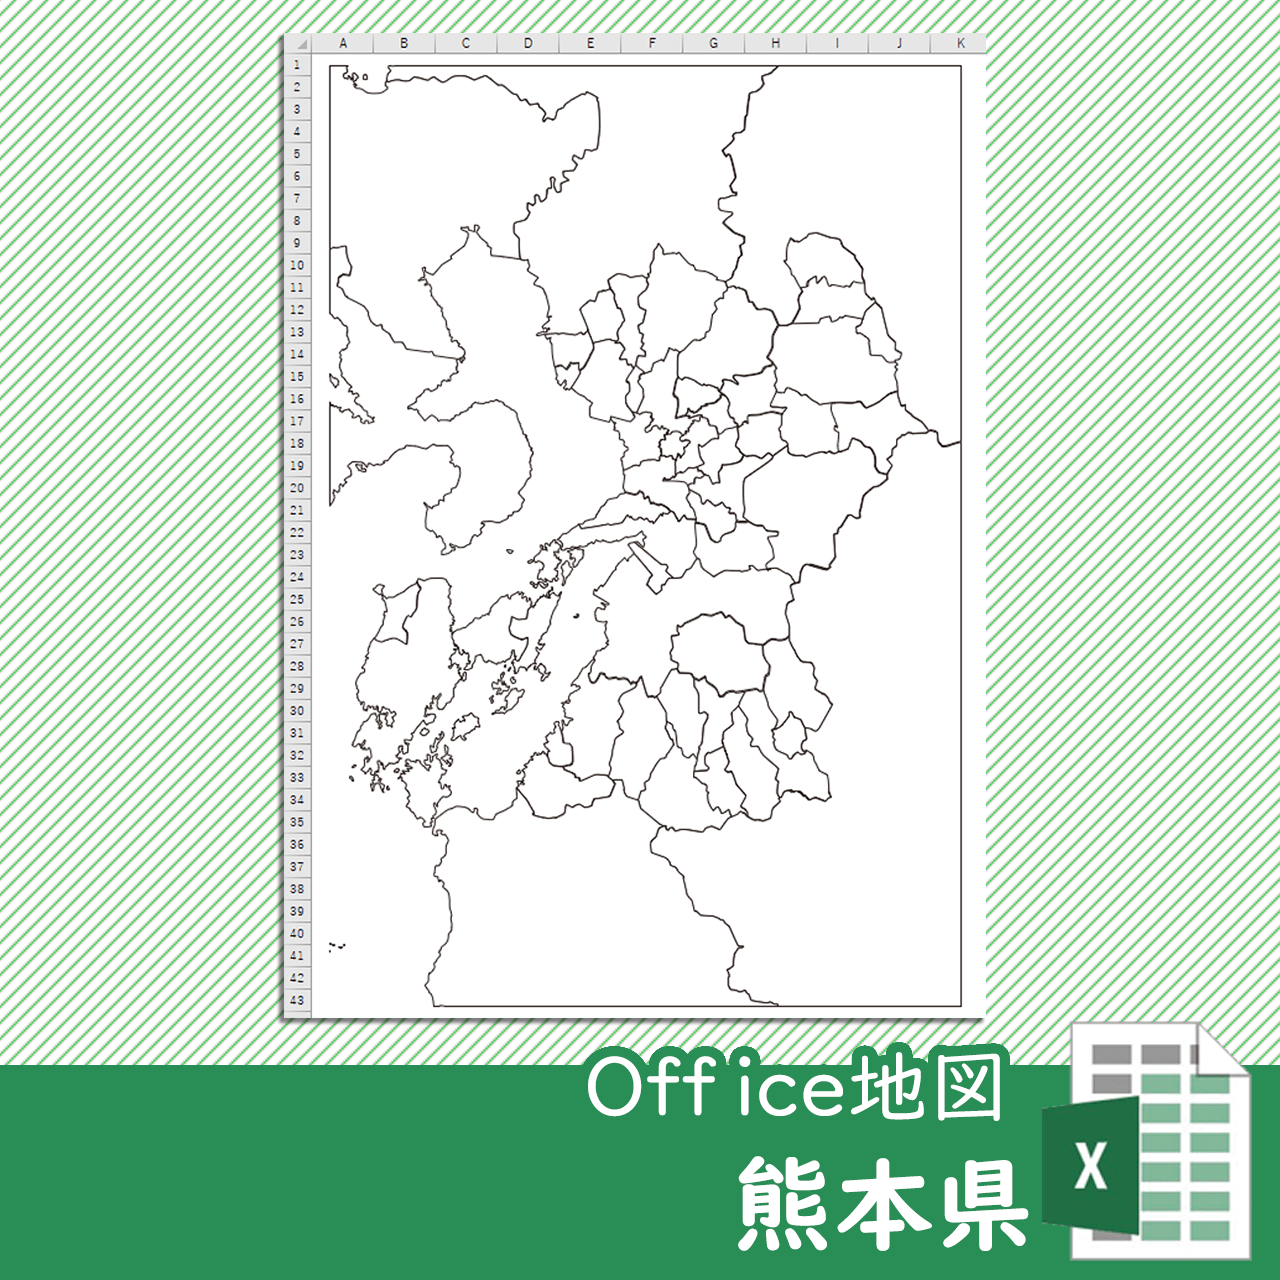 熊本県のoffice地図